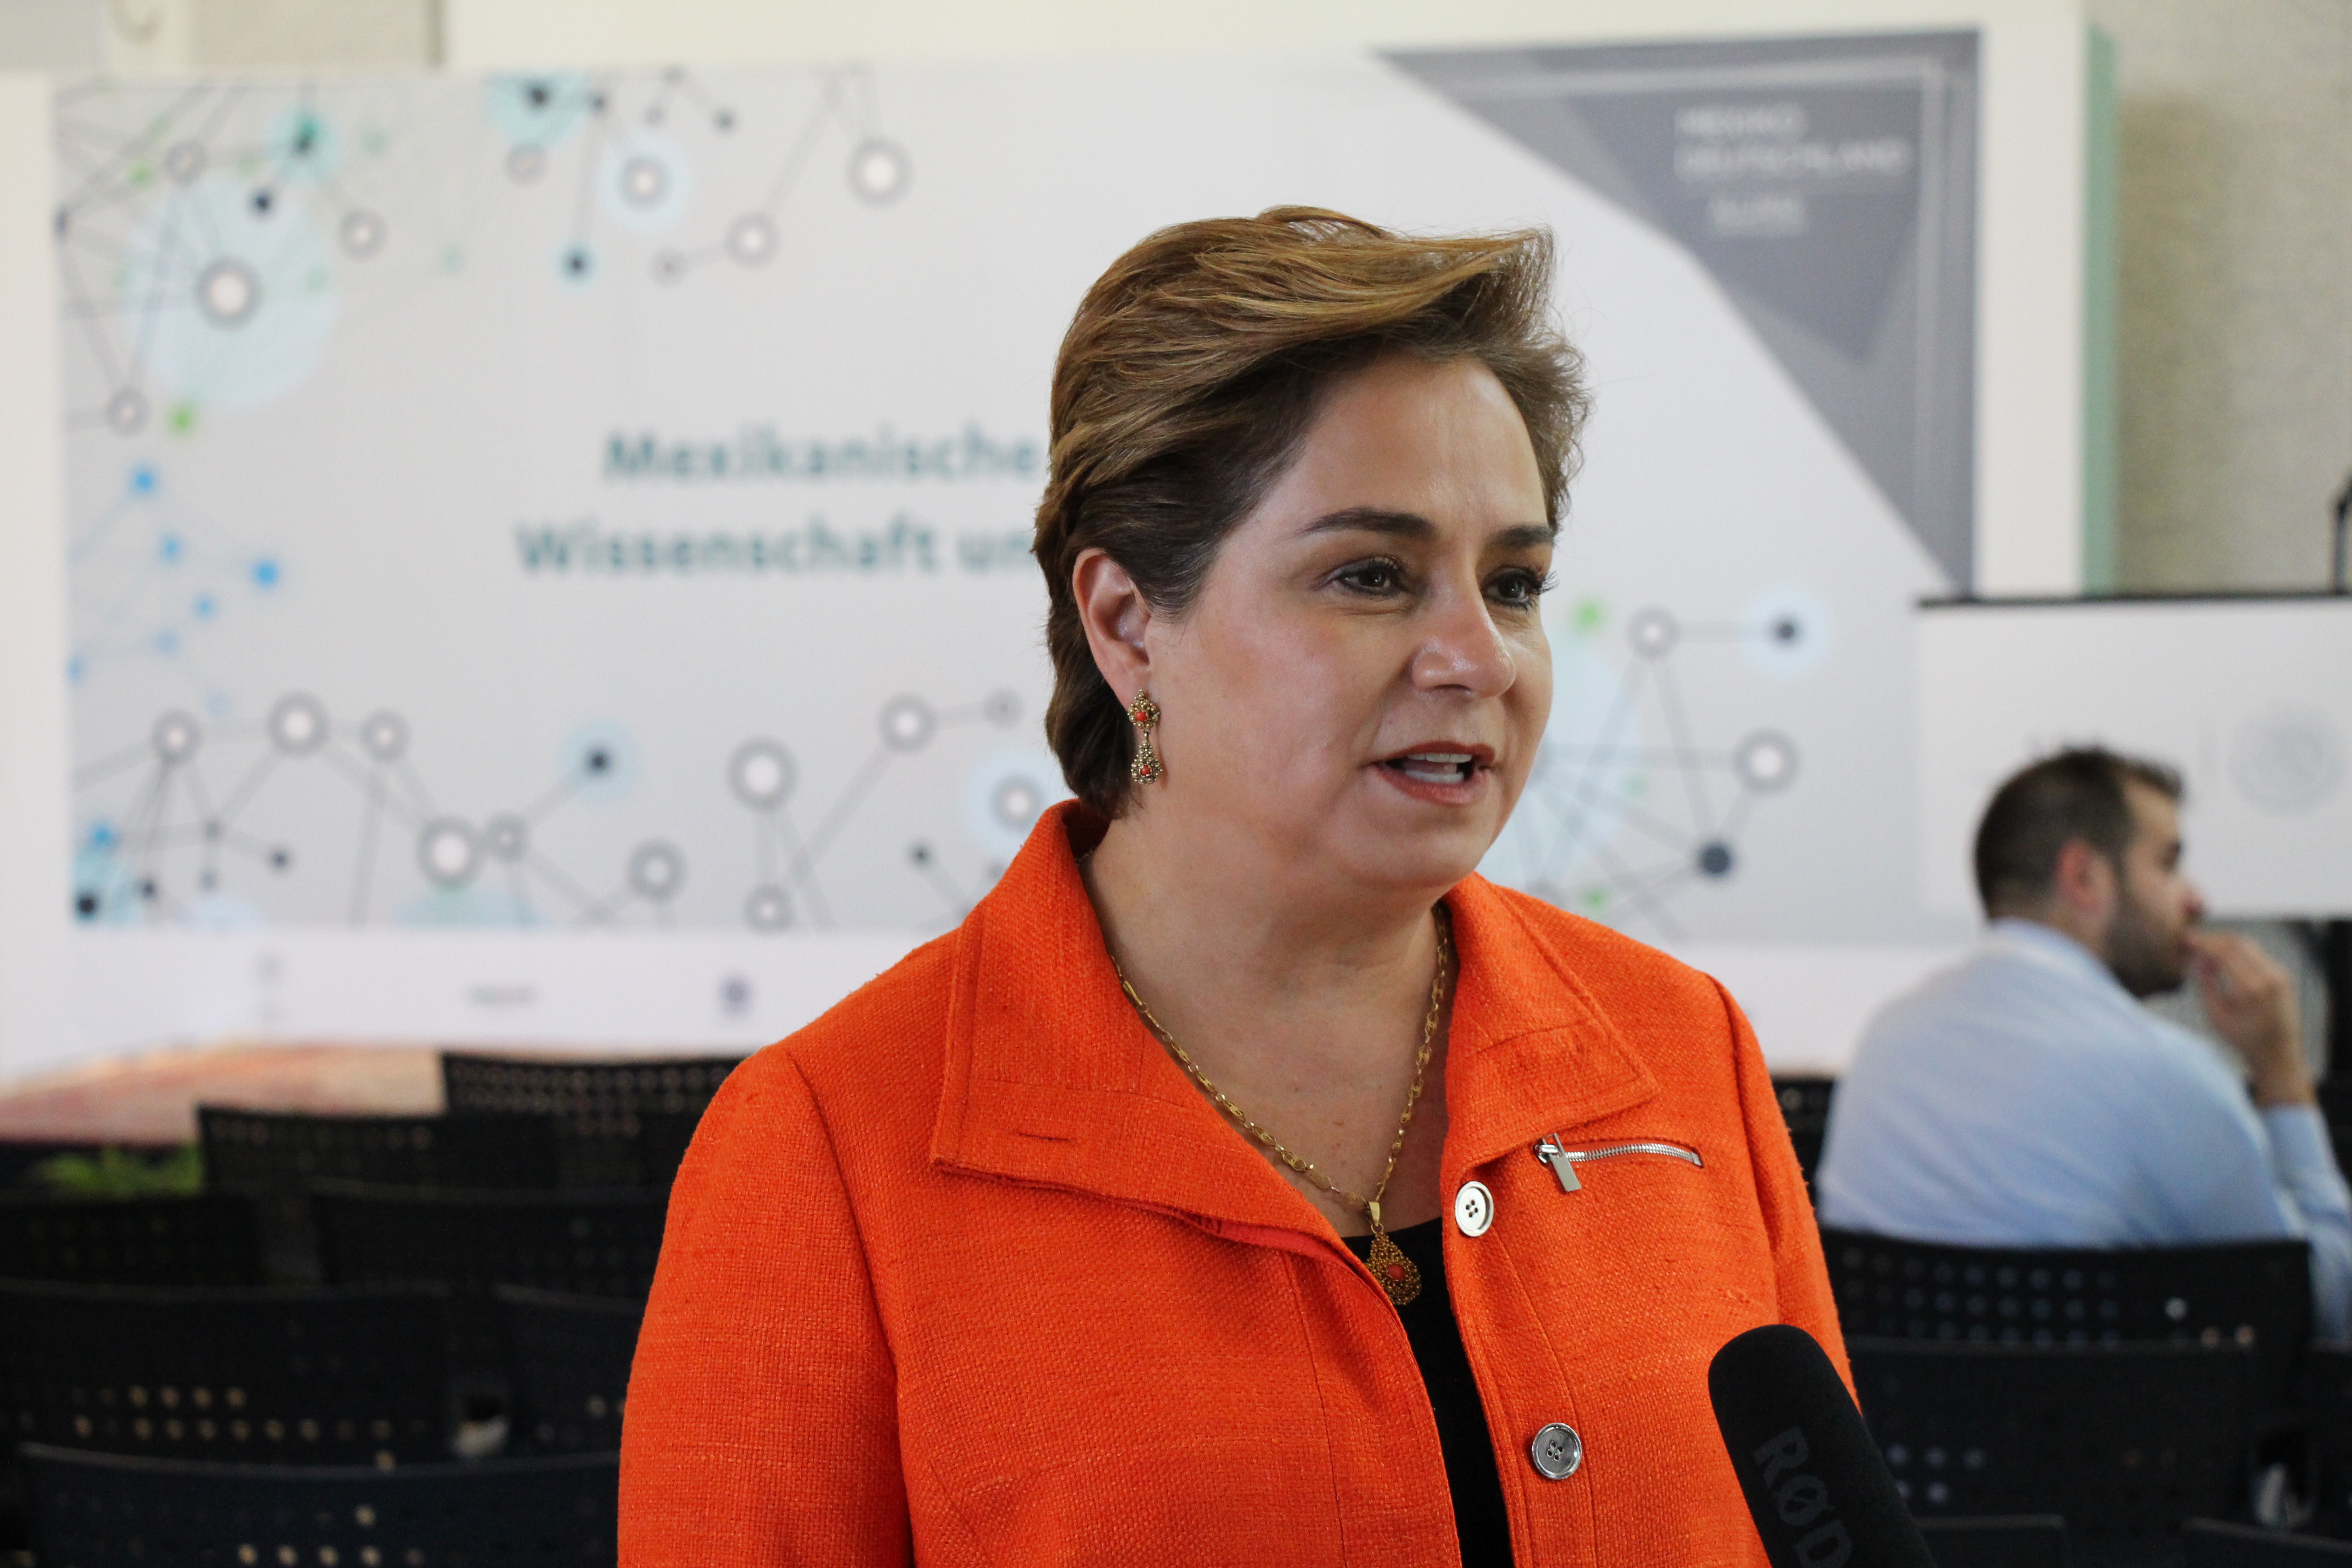 Mexican Ambassador Patricia Espinosa Cantellano